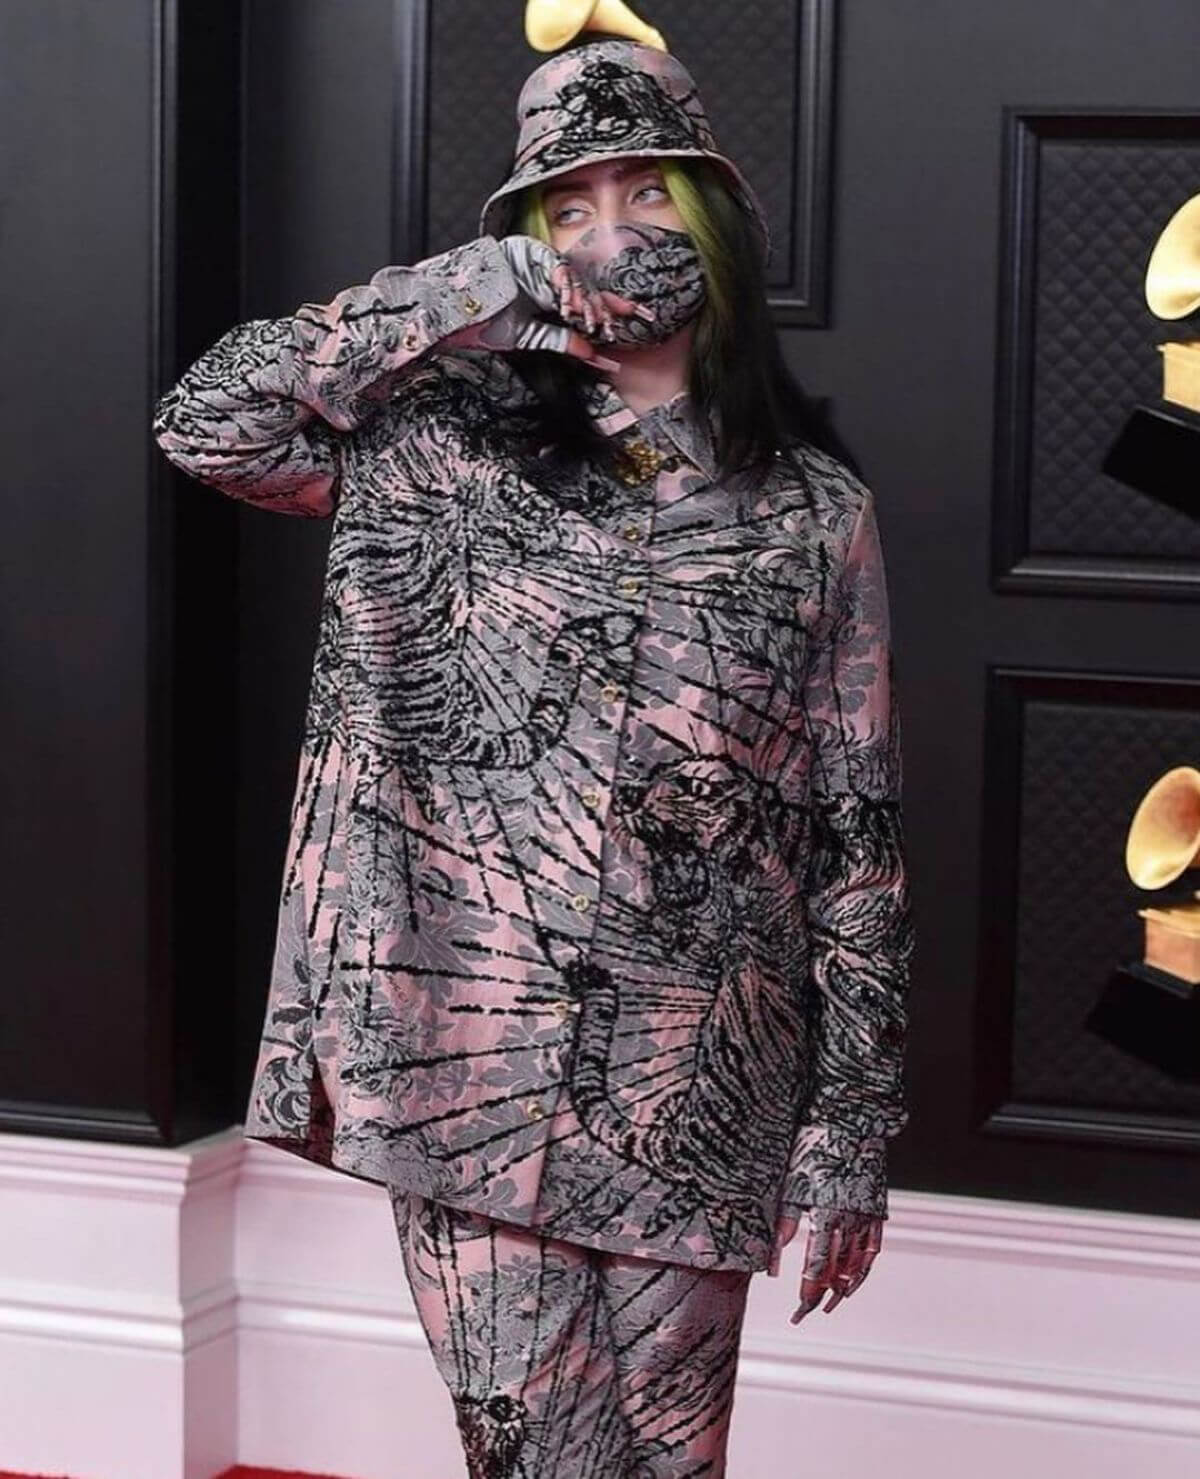 Billie Eilish attends 2021 Grammy Awards in Los Angeles 03/14/2021 2